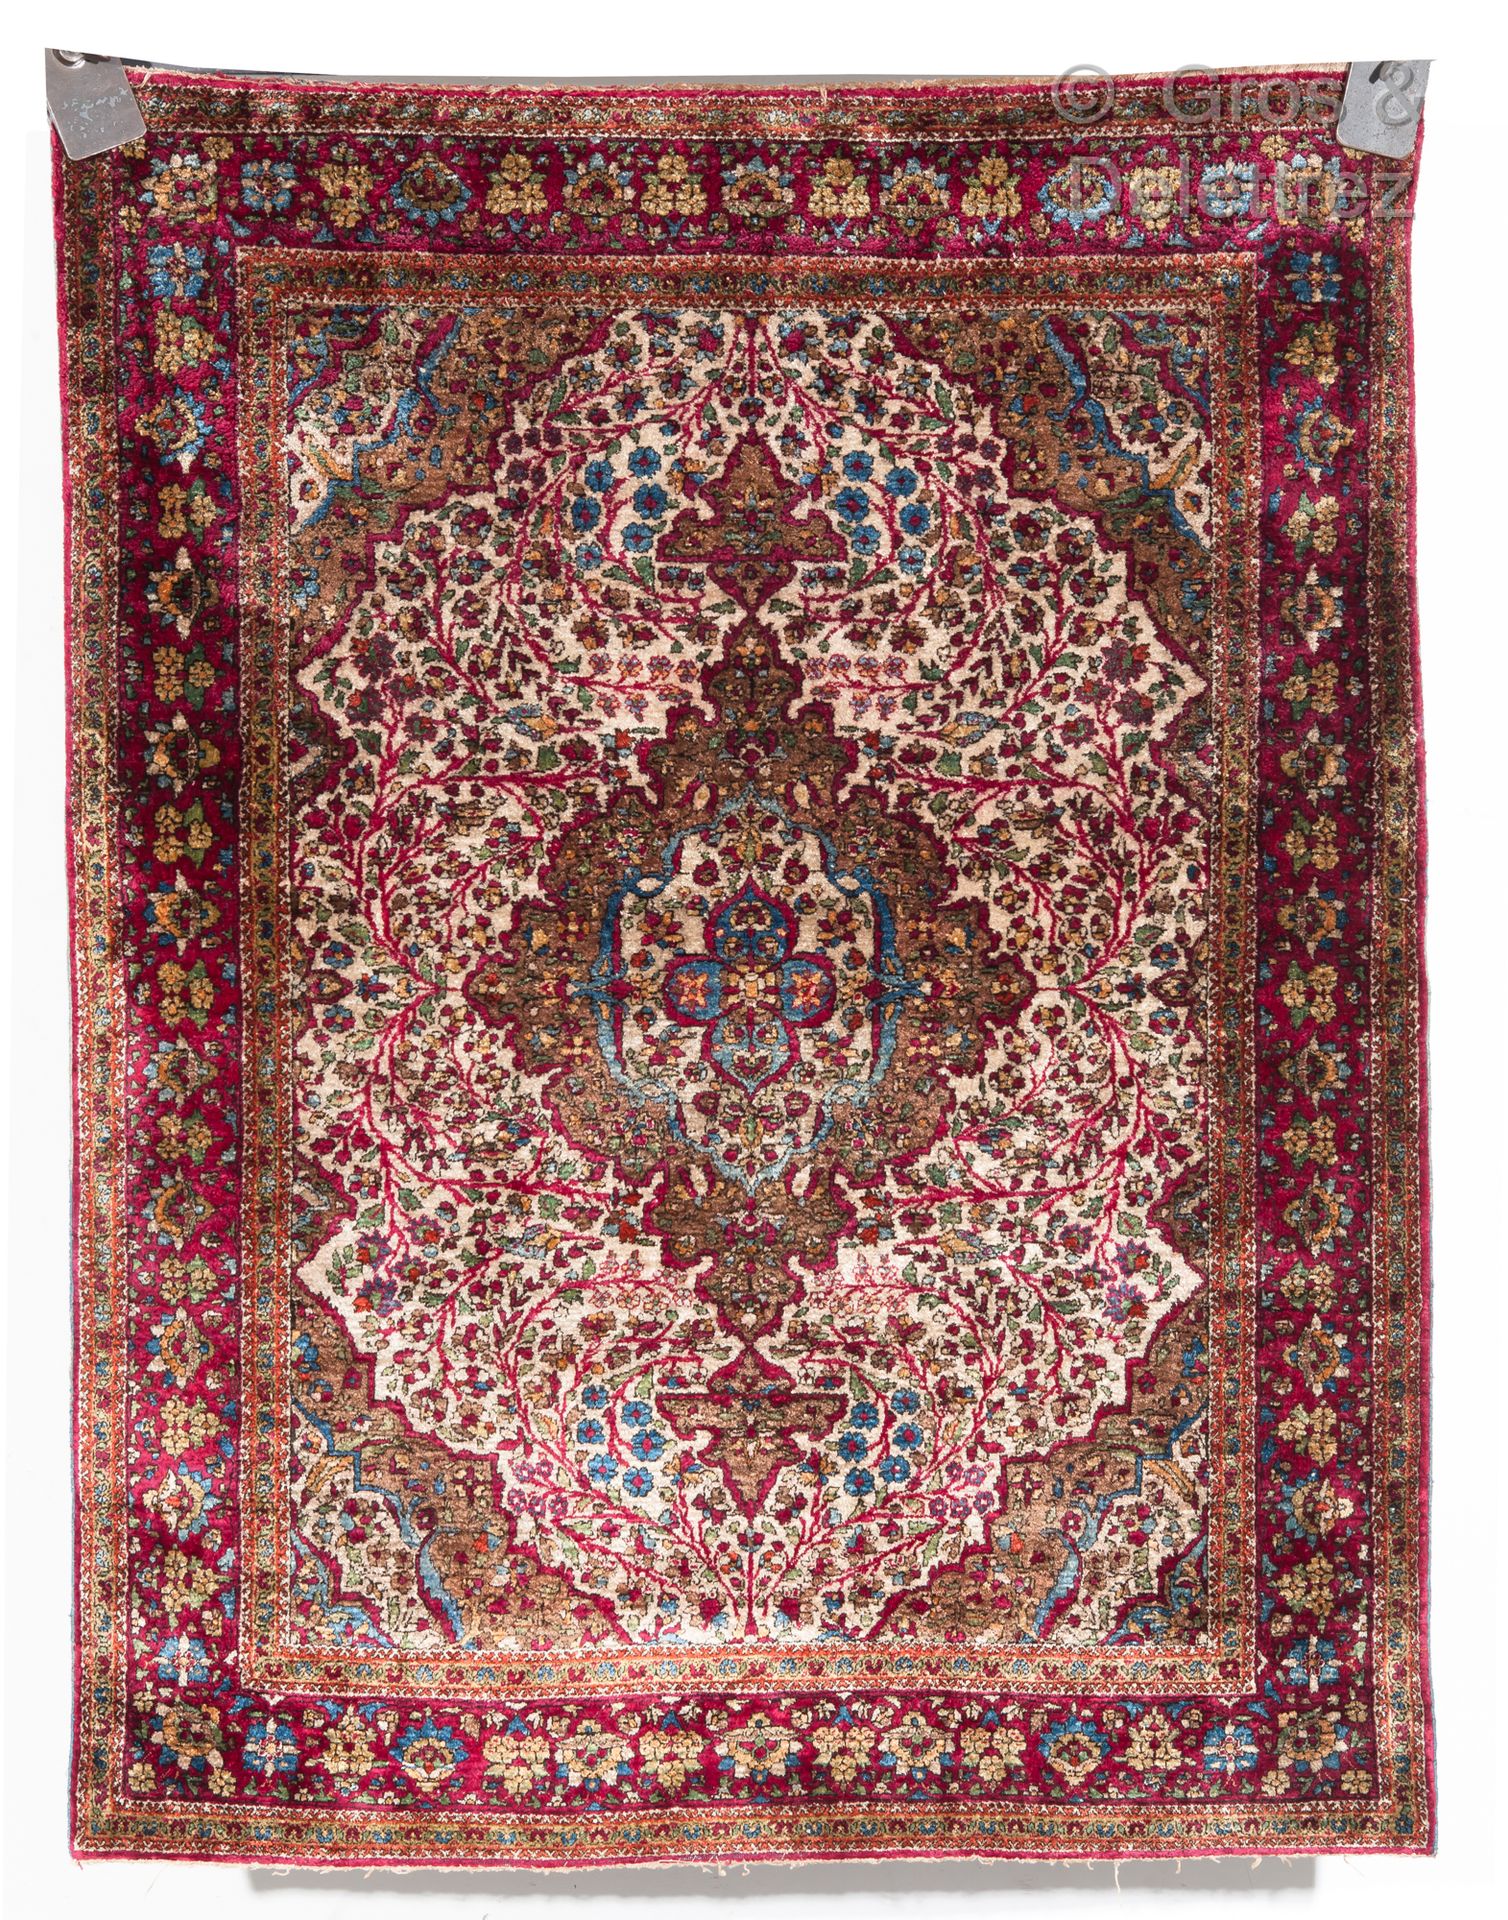 Null 伊朗古董柯曼丝毯

一块精美的古董基尔曼（克尔曼）丝毯，伊朗

来自基尔曼市一家作坊的丝绸地毯。奖章和带花饰的窗台的构成。这块地毯打结精细，质量很好。&hellip;